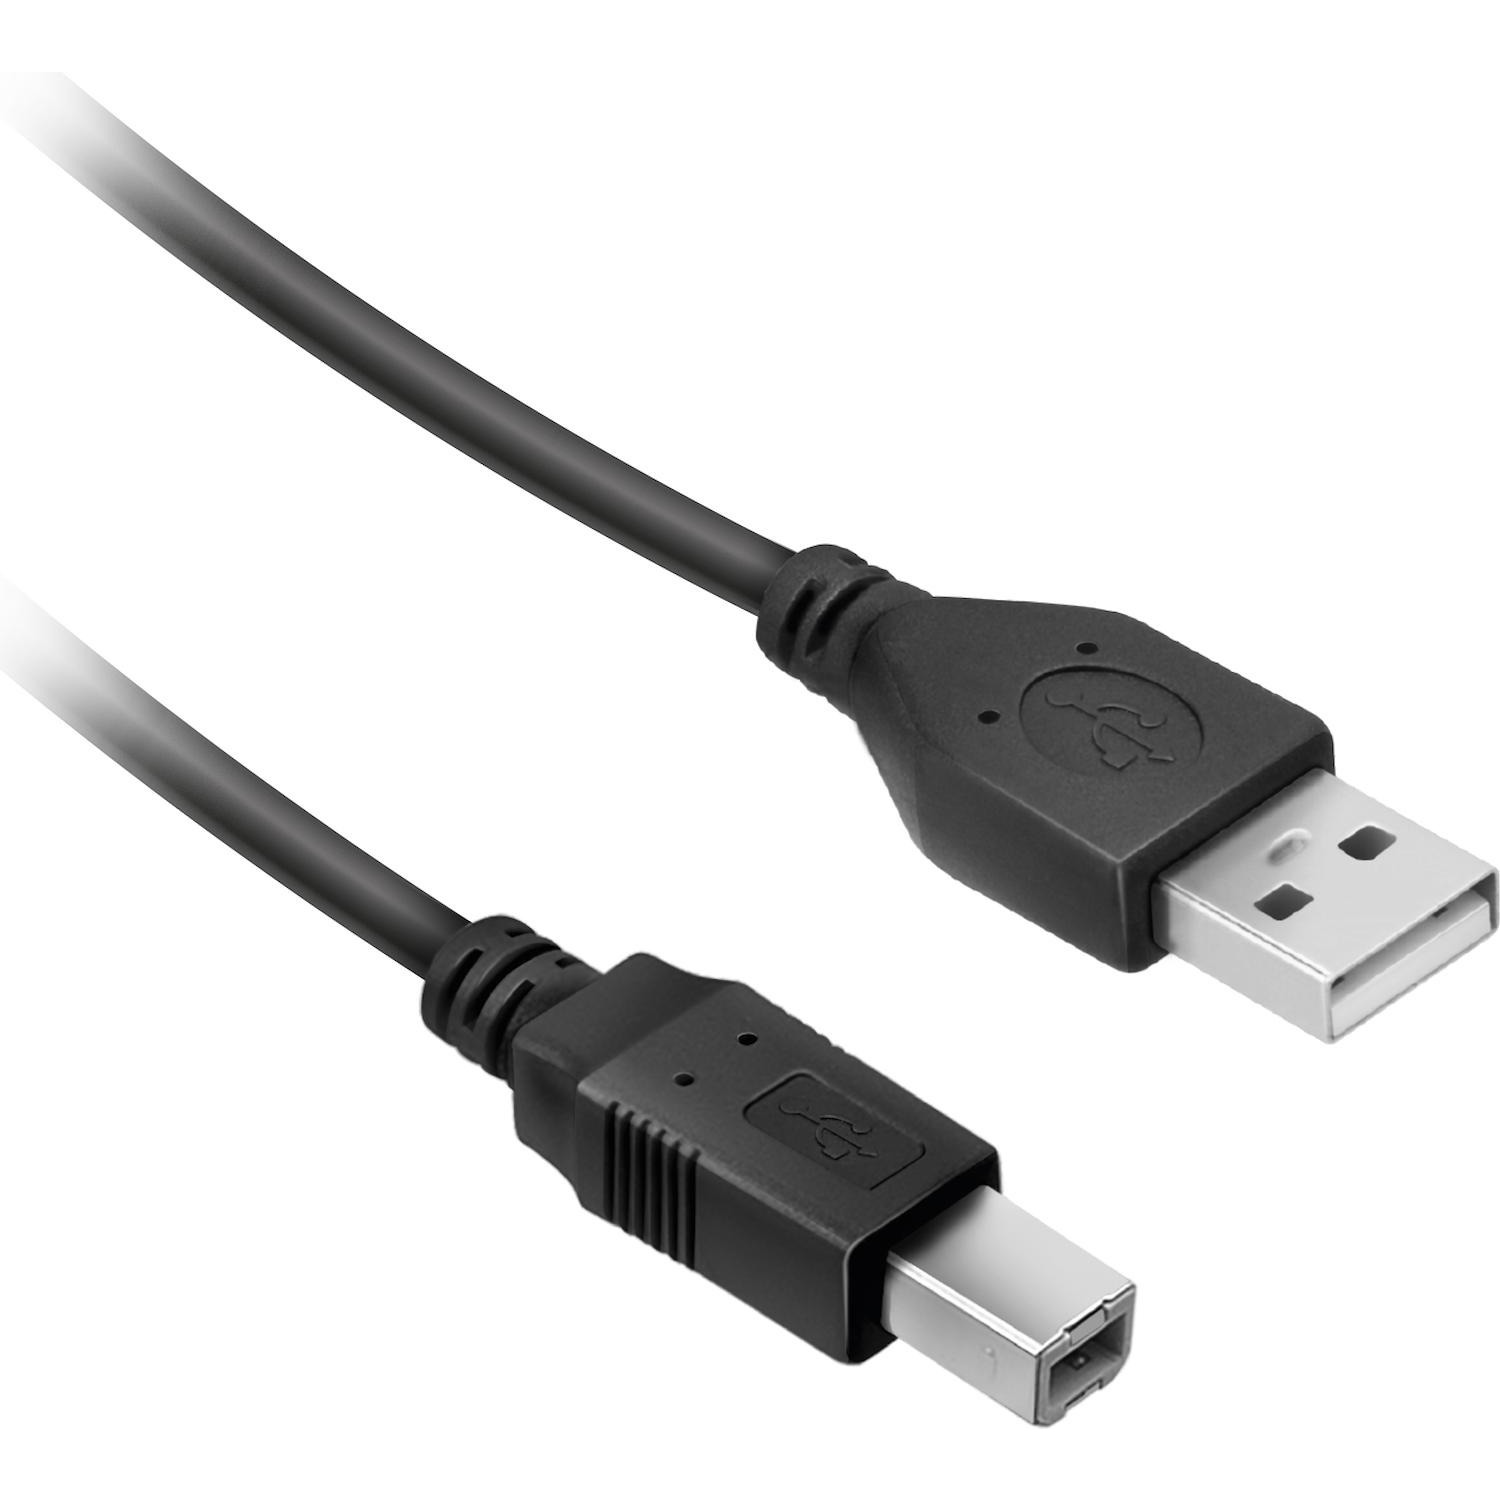 CAVO USB 2.0 5 MT AD ALTA VELOCITÀ PER STAMPANTE HARD DISK SCANNER A/B  MASCHIO